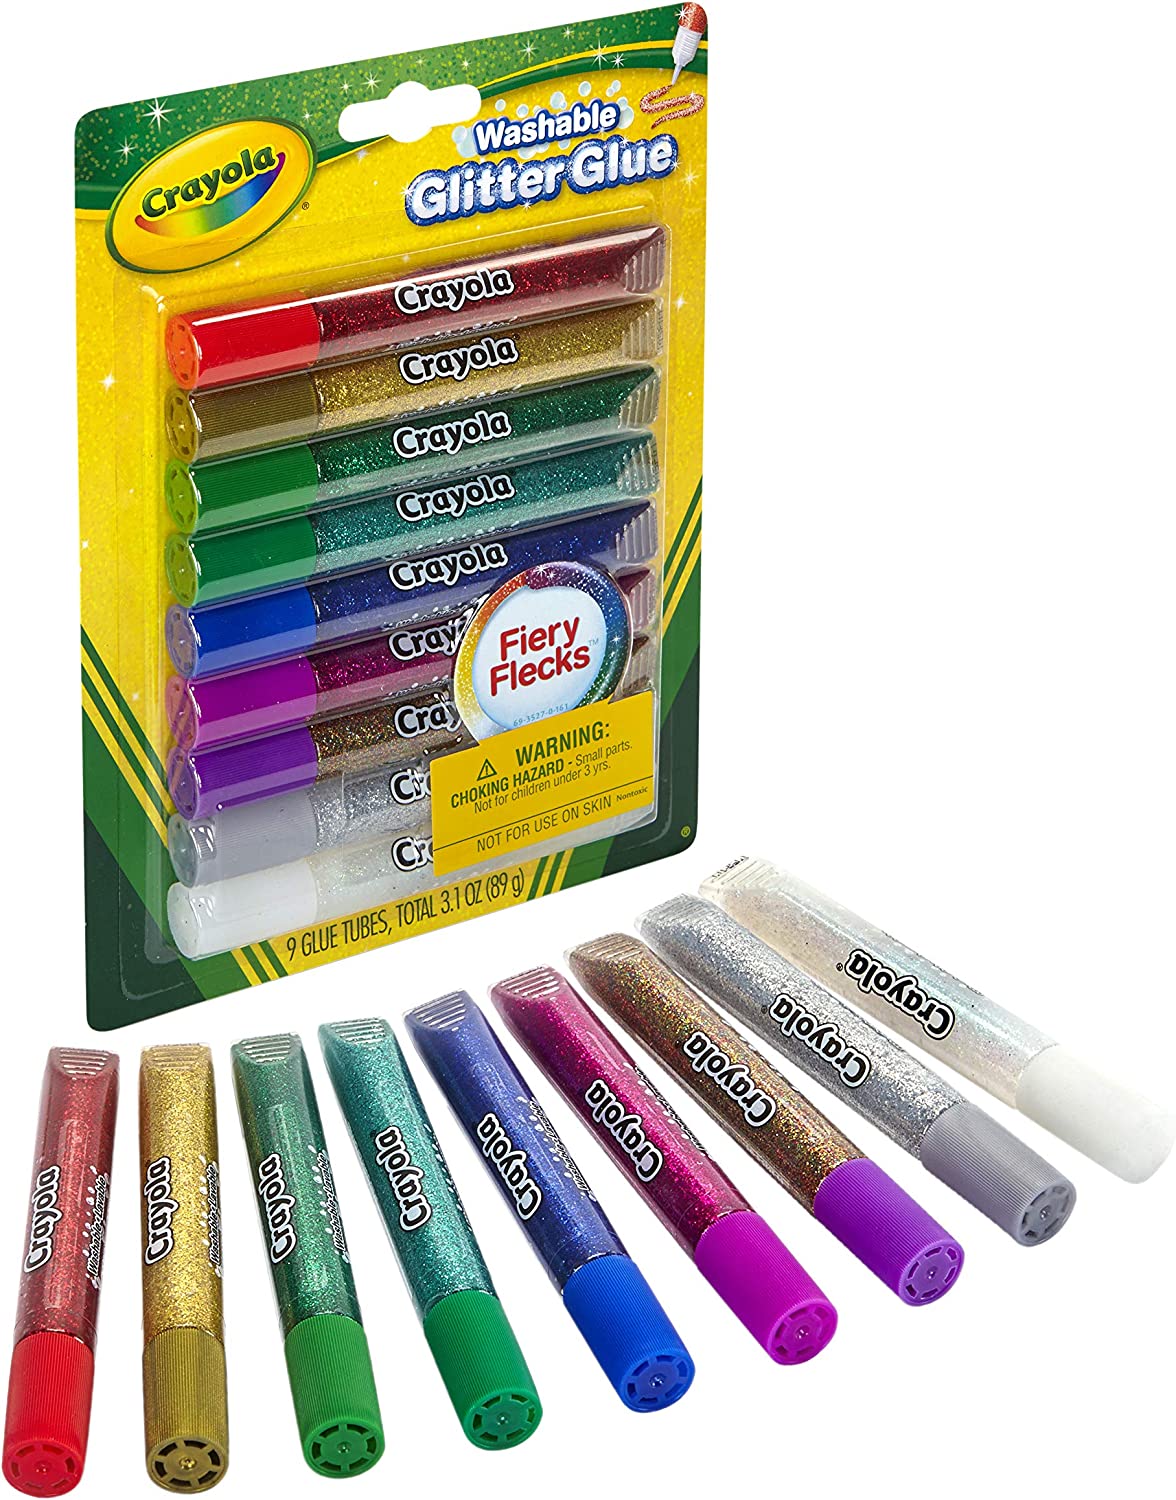 Crayola Washable Glitter Glue 9 s